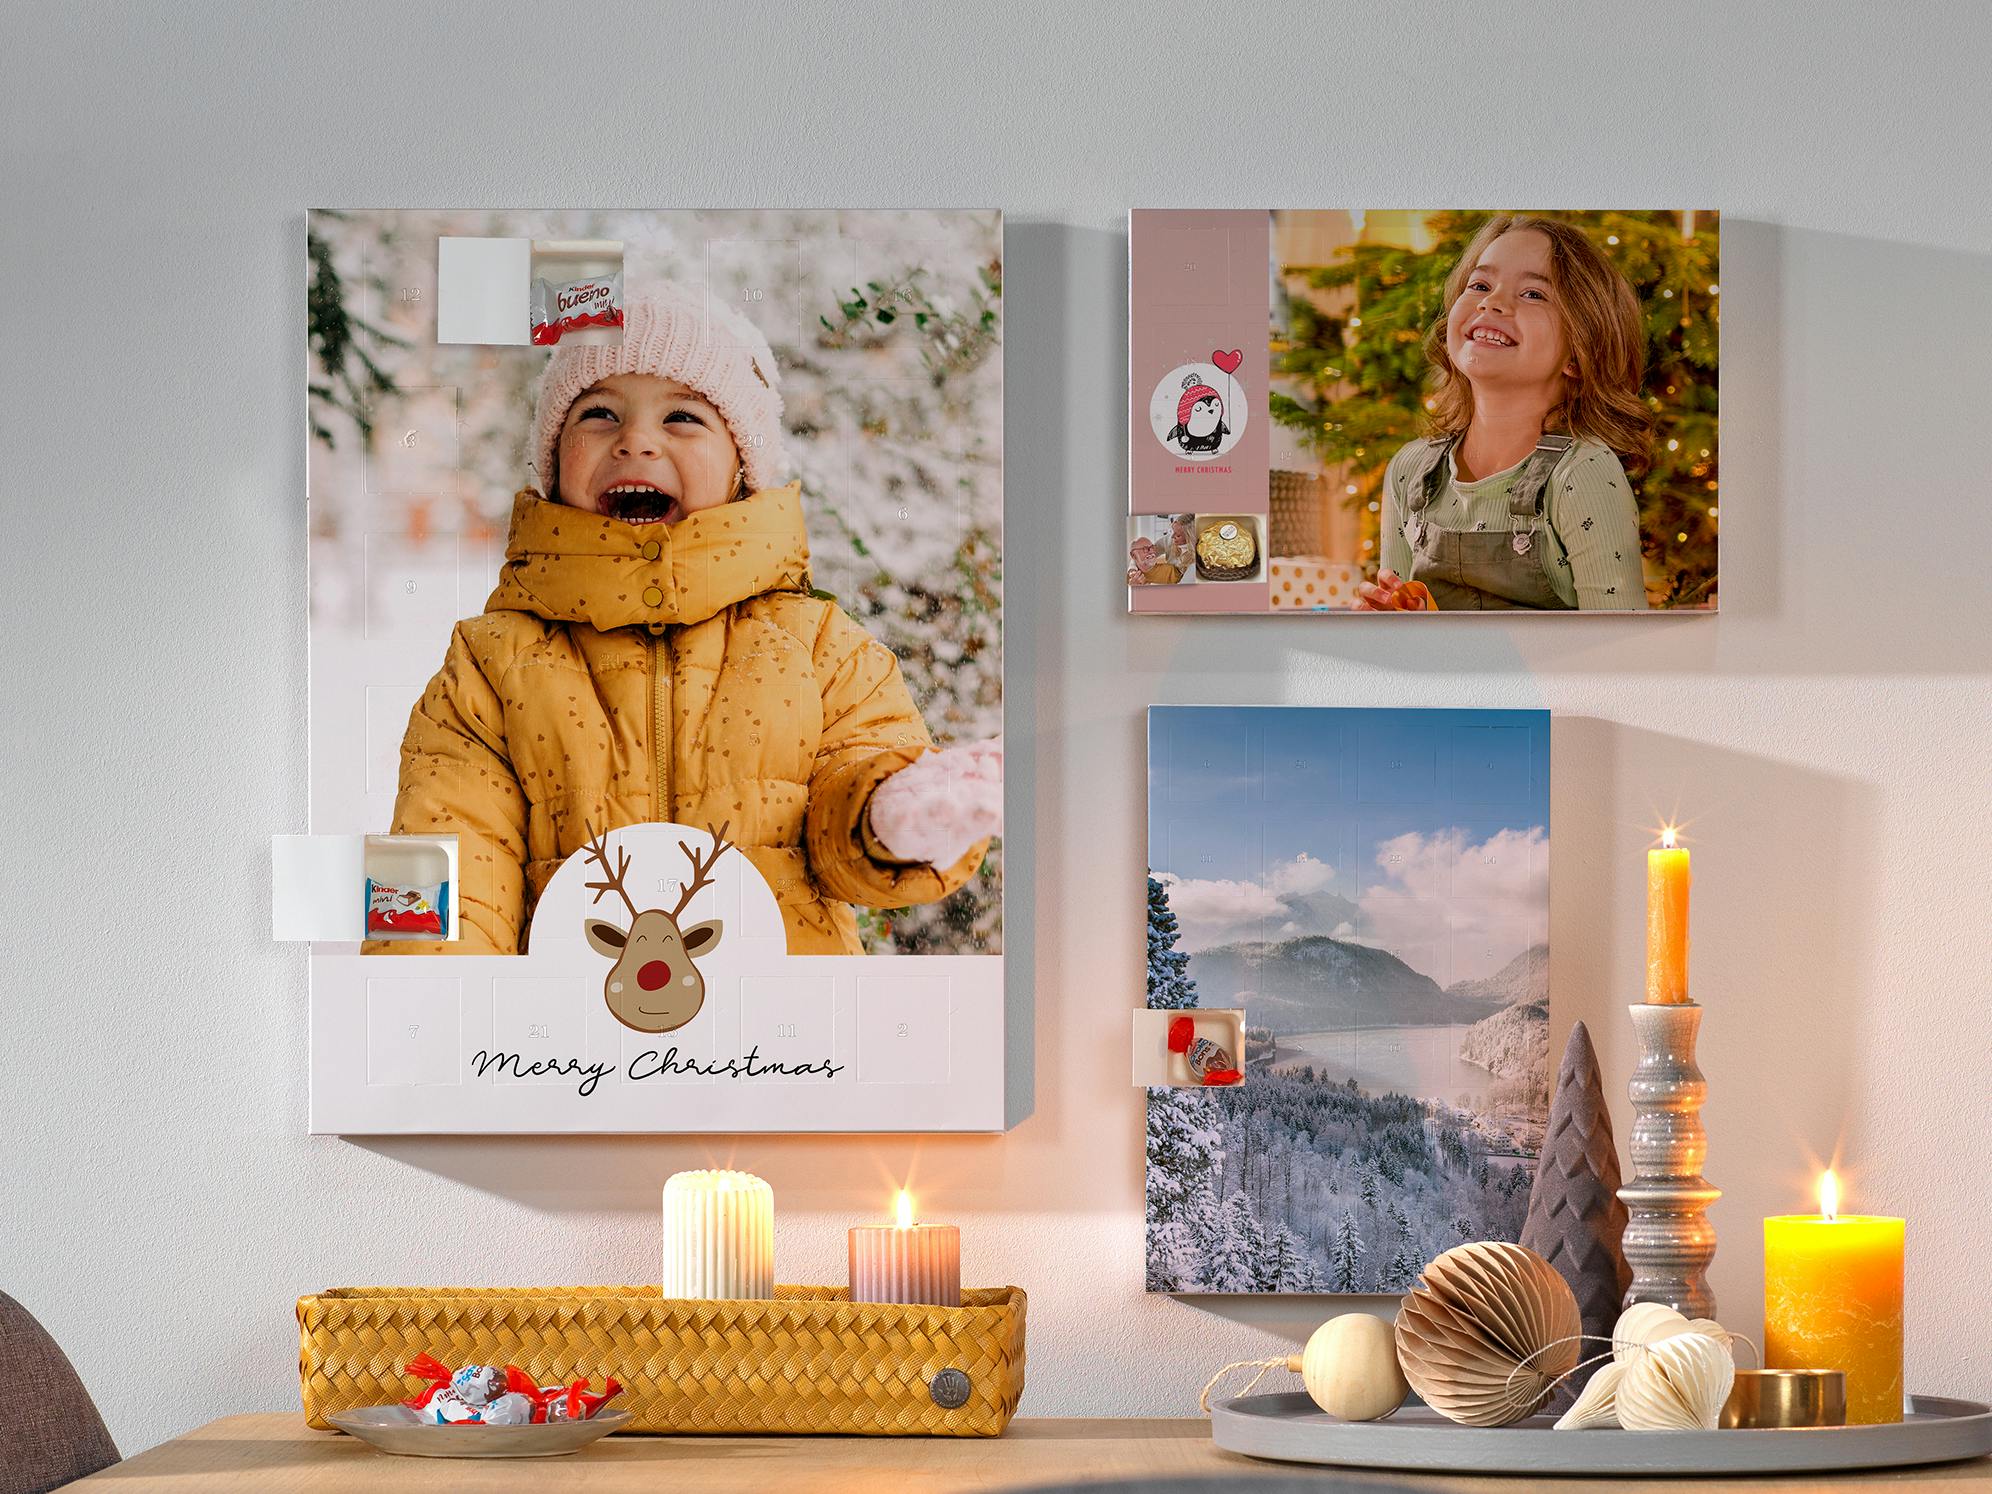 Foto-Adventskalender mit Schokolade von Kinder und Ferrero Pralinen